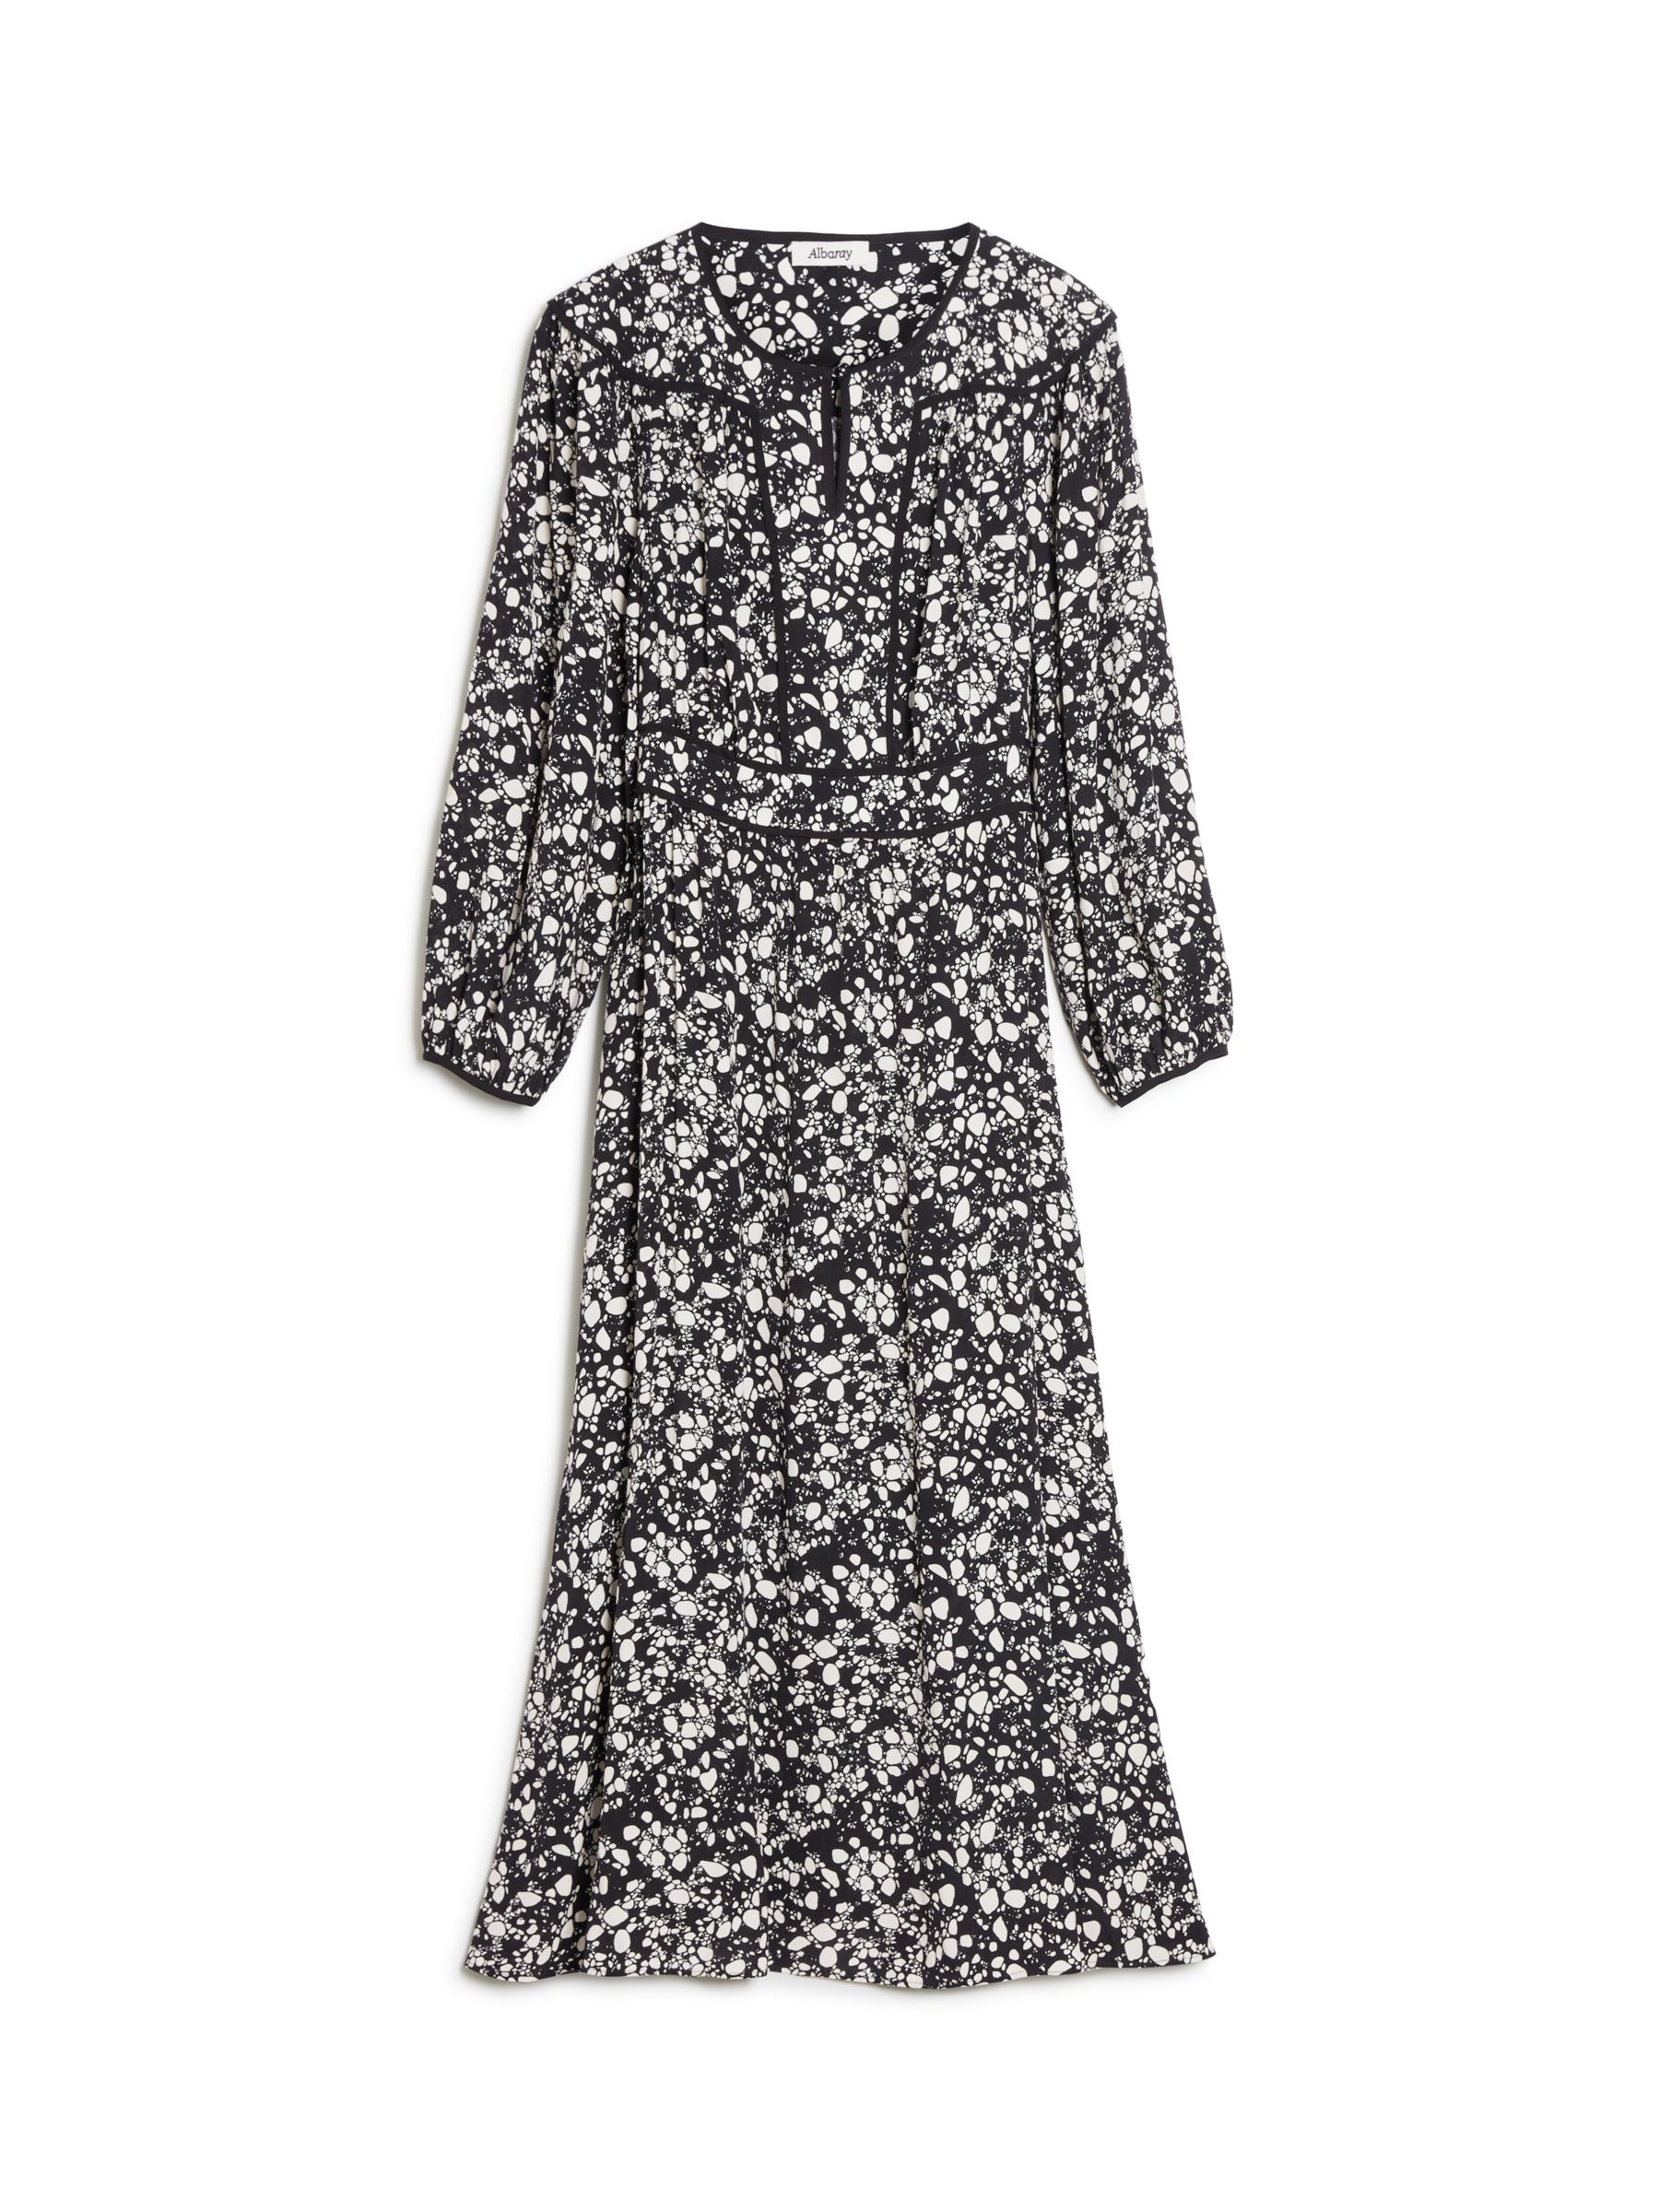 Albaray Pebble Print Midi Dress, Black/White at John Lewis & Partners